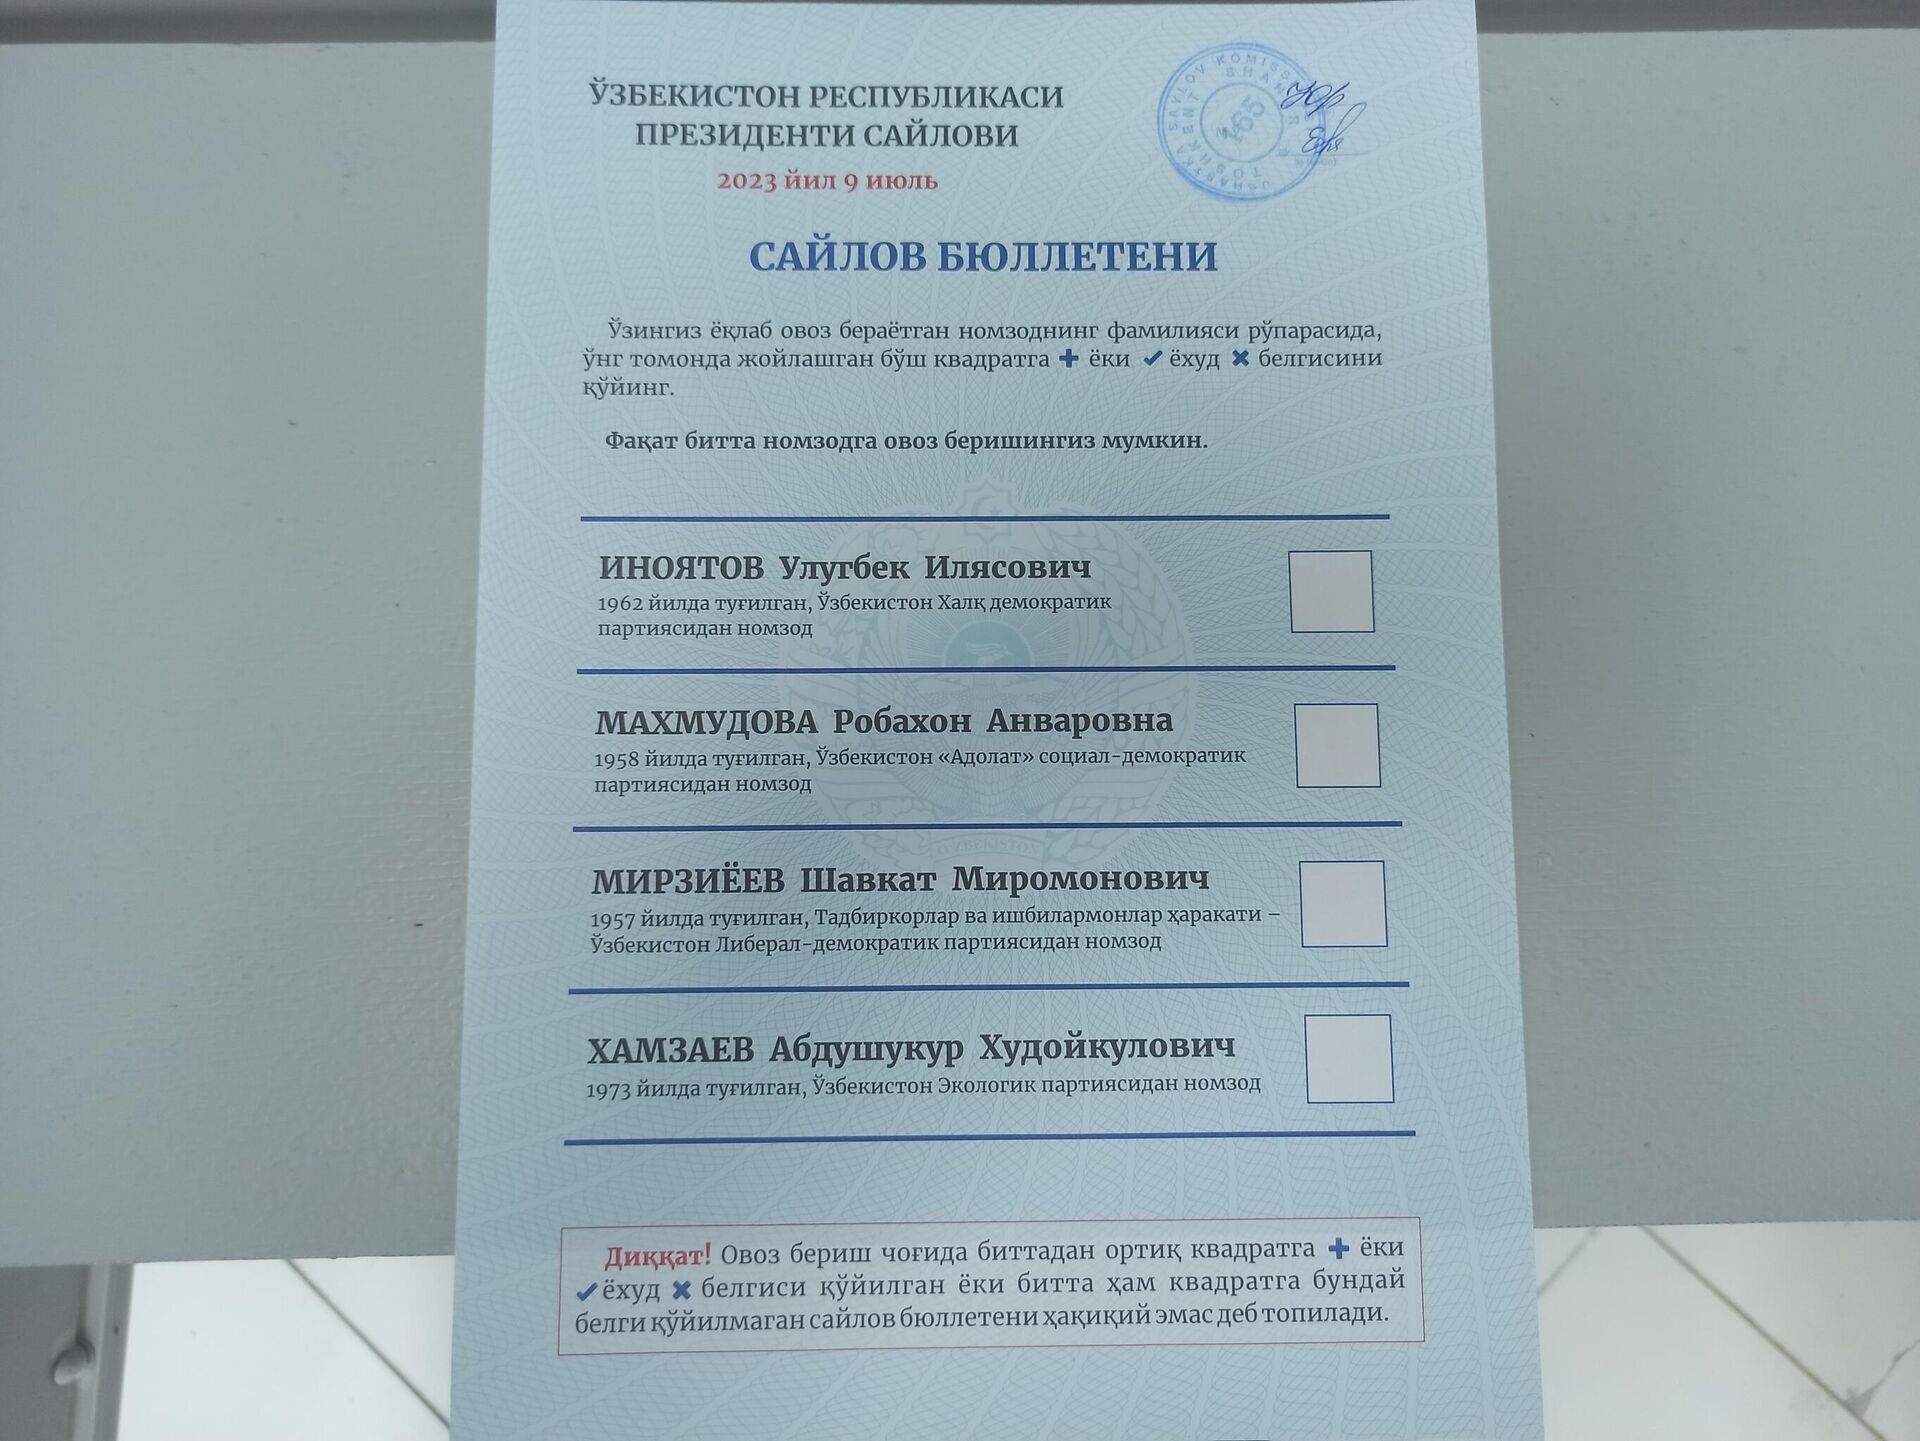 Бюллетень для голосования на выборах президента Узбекистана. - Sputnik Узбекистан, 1920, 28.06.2023